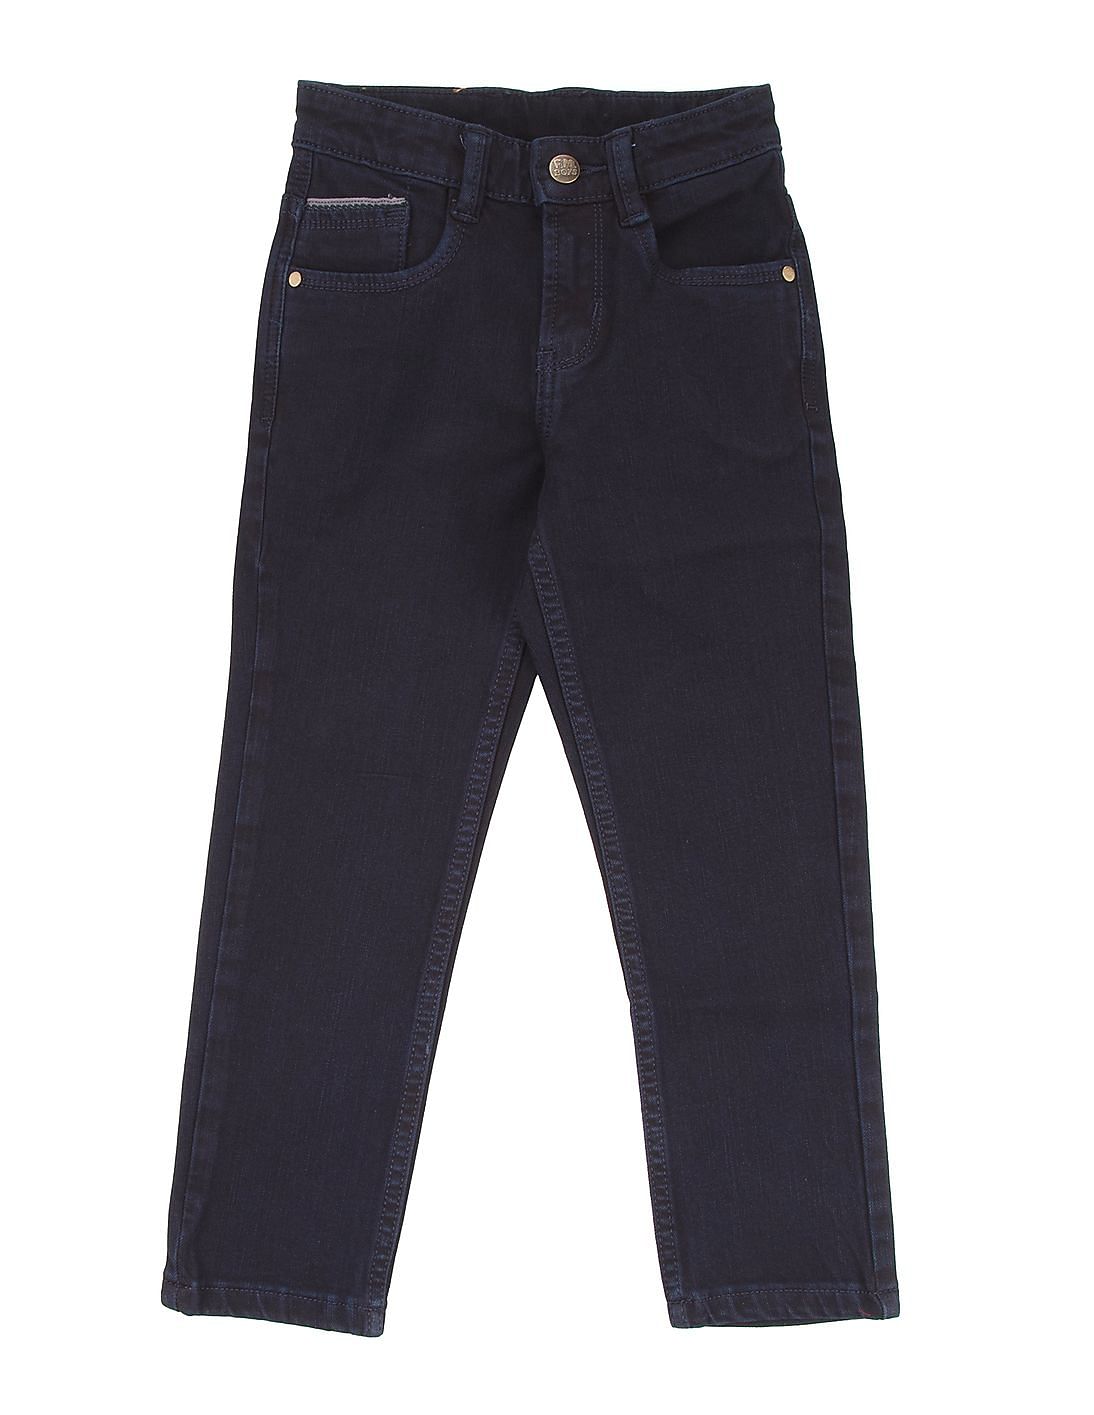 Buy FM Boys Boys Solid Slim Fit Jeans - NNNOW.com